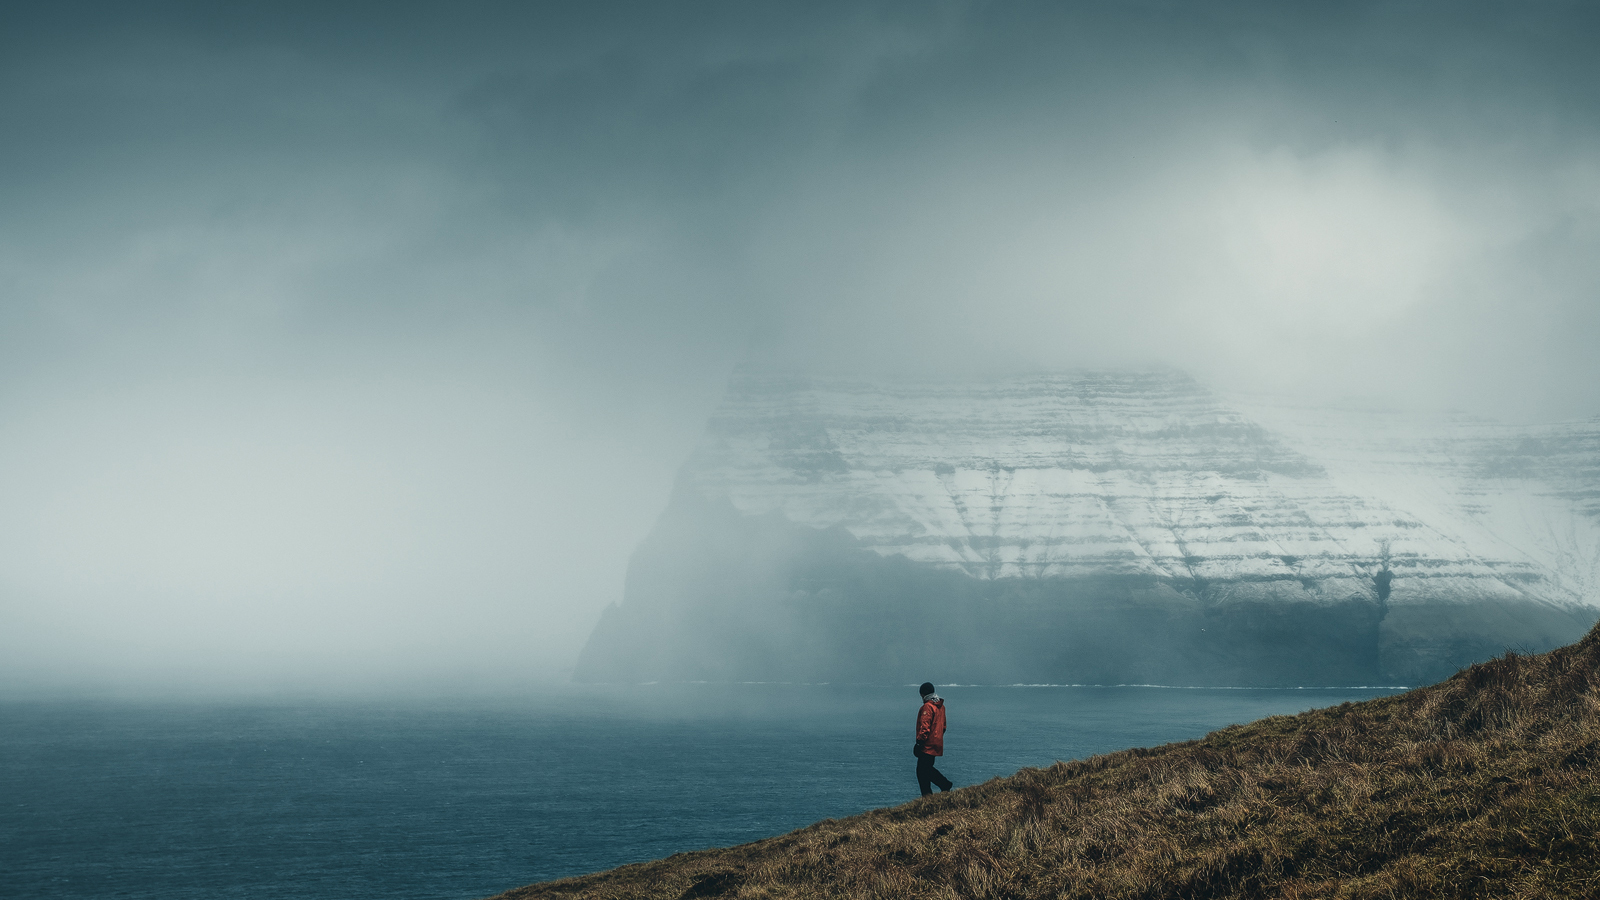 Just a casual stroll in Faroe Islands